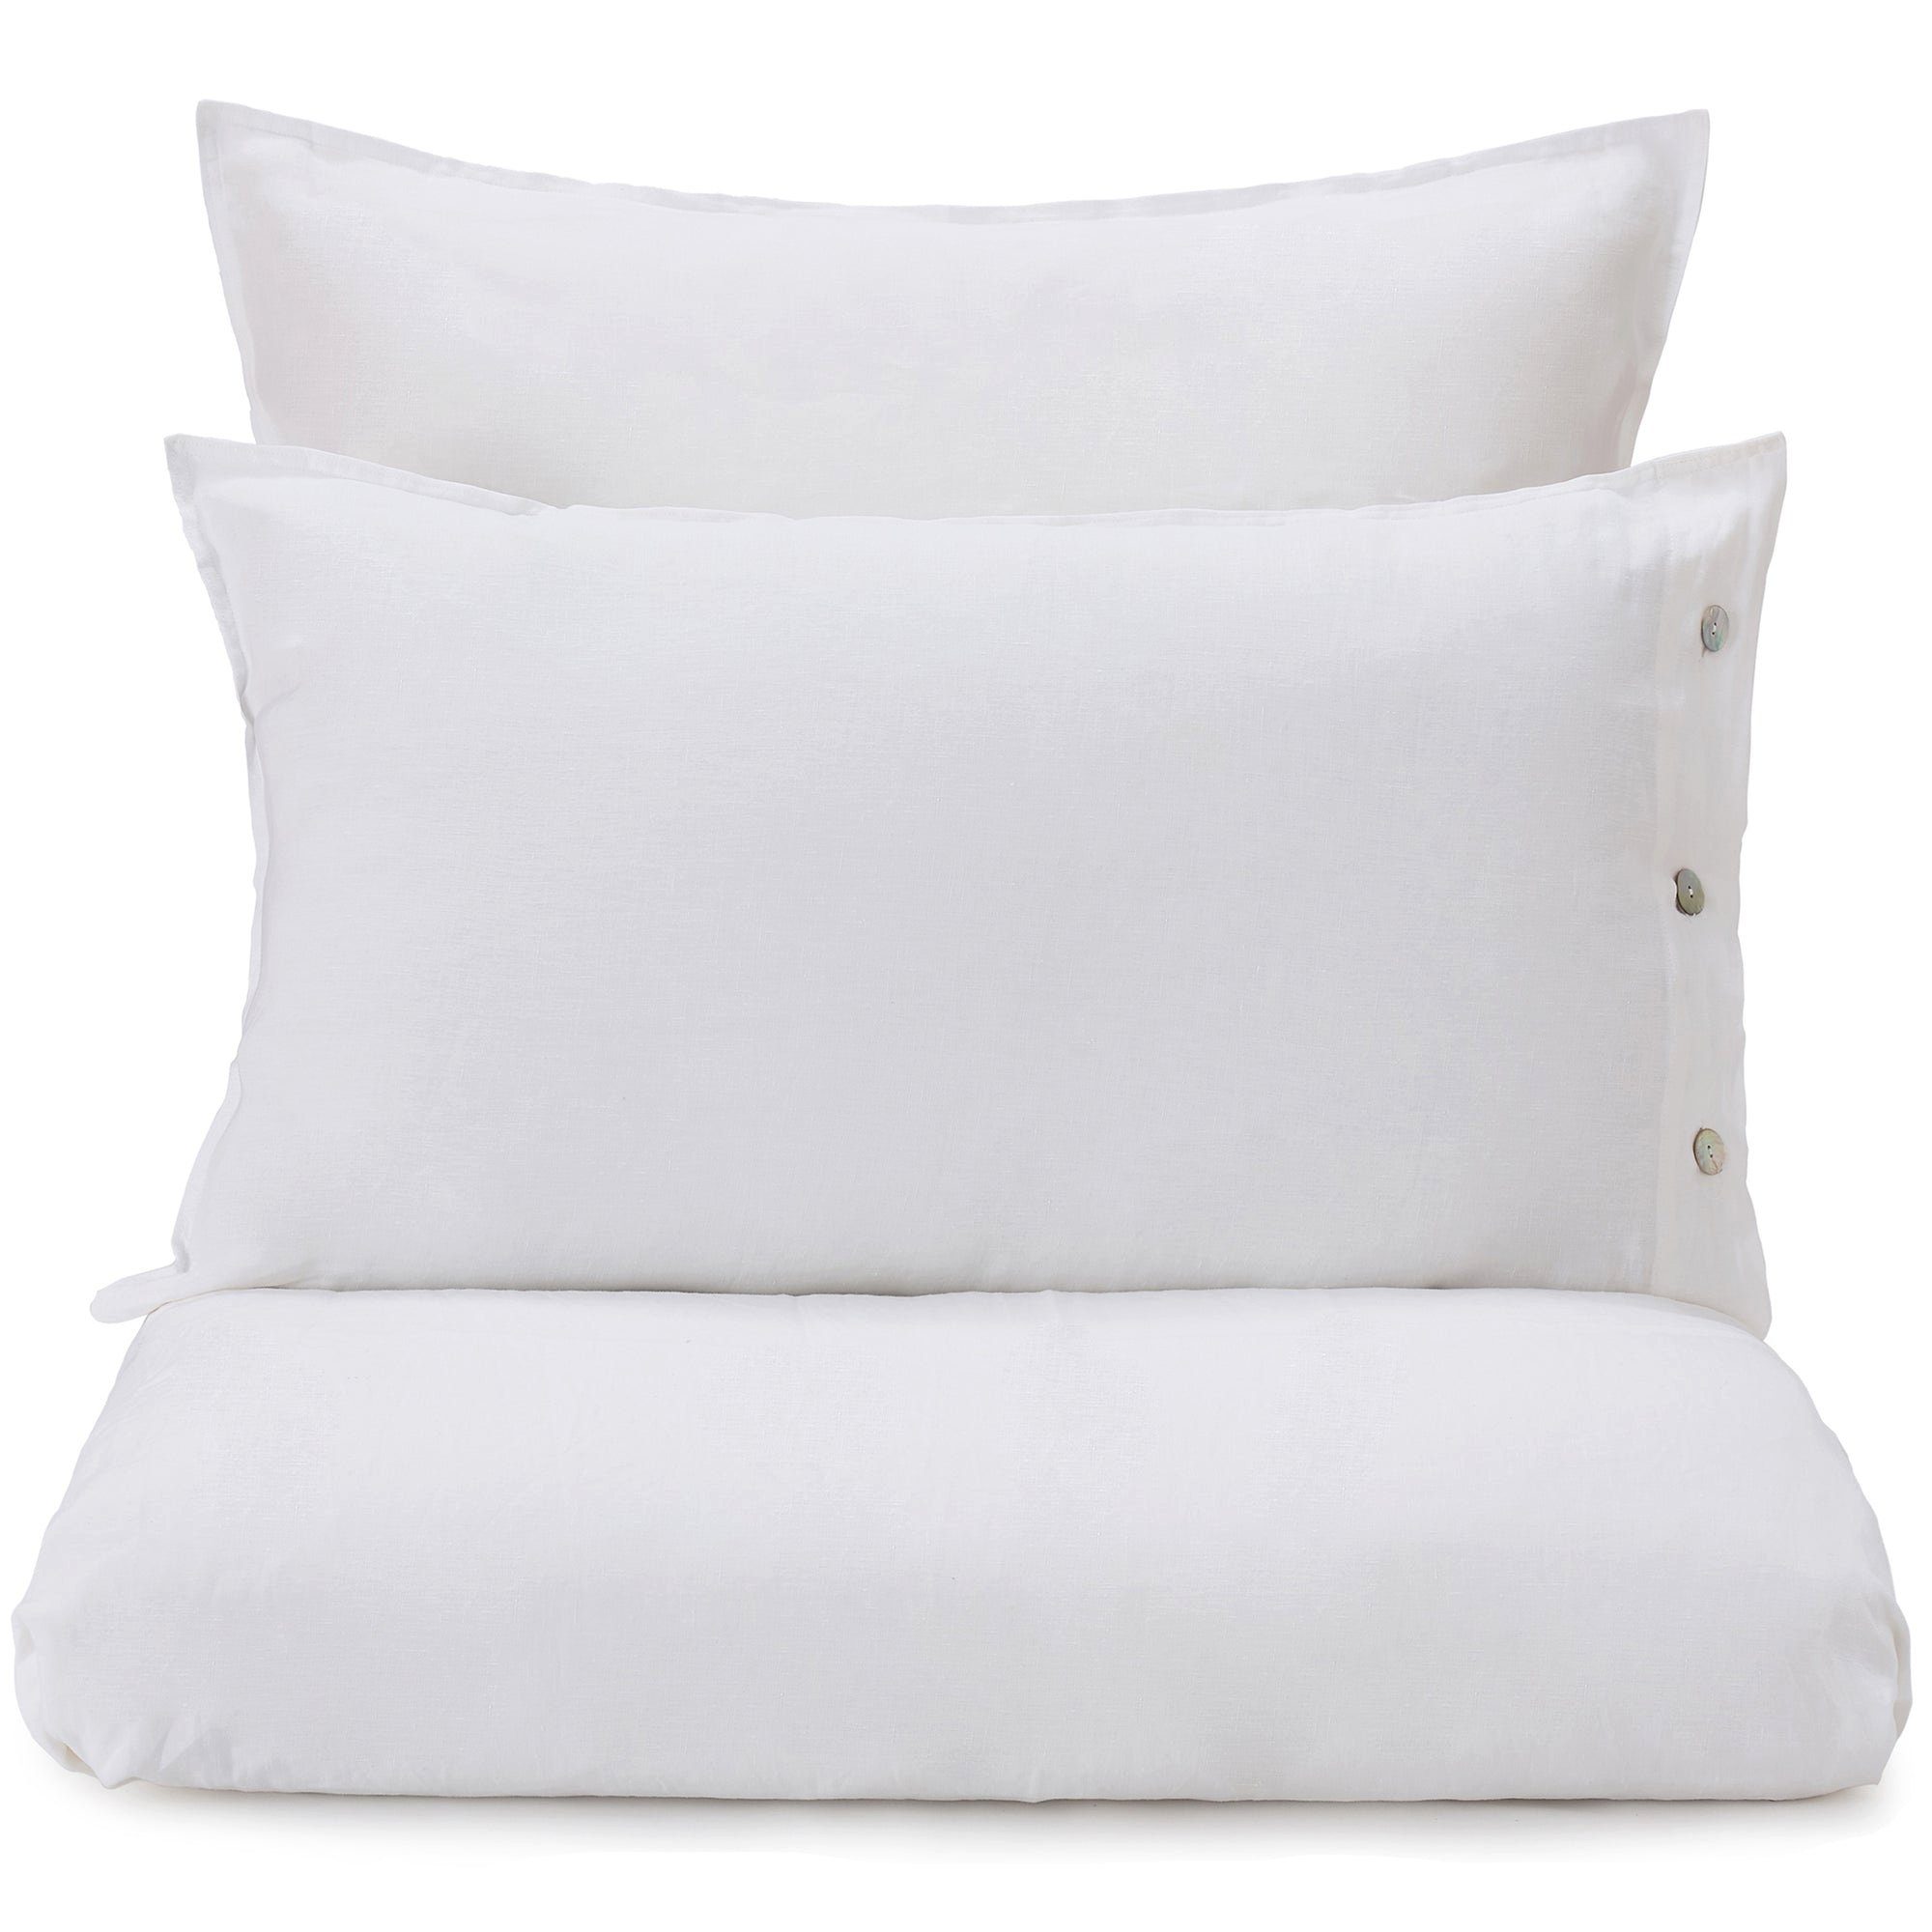 Bettbezug Bellvis Bettdeckenbezug aus 100% Leinen - 225x220 cm, Weiß, Urbanara (1 St), Schlicht & sanft strukturiert, mit Perlmuttknöpfen, aus reinem Leinen